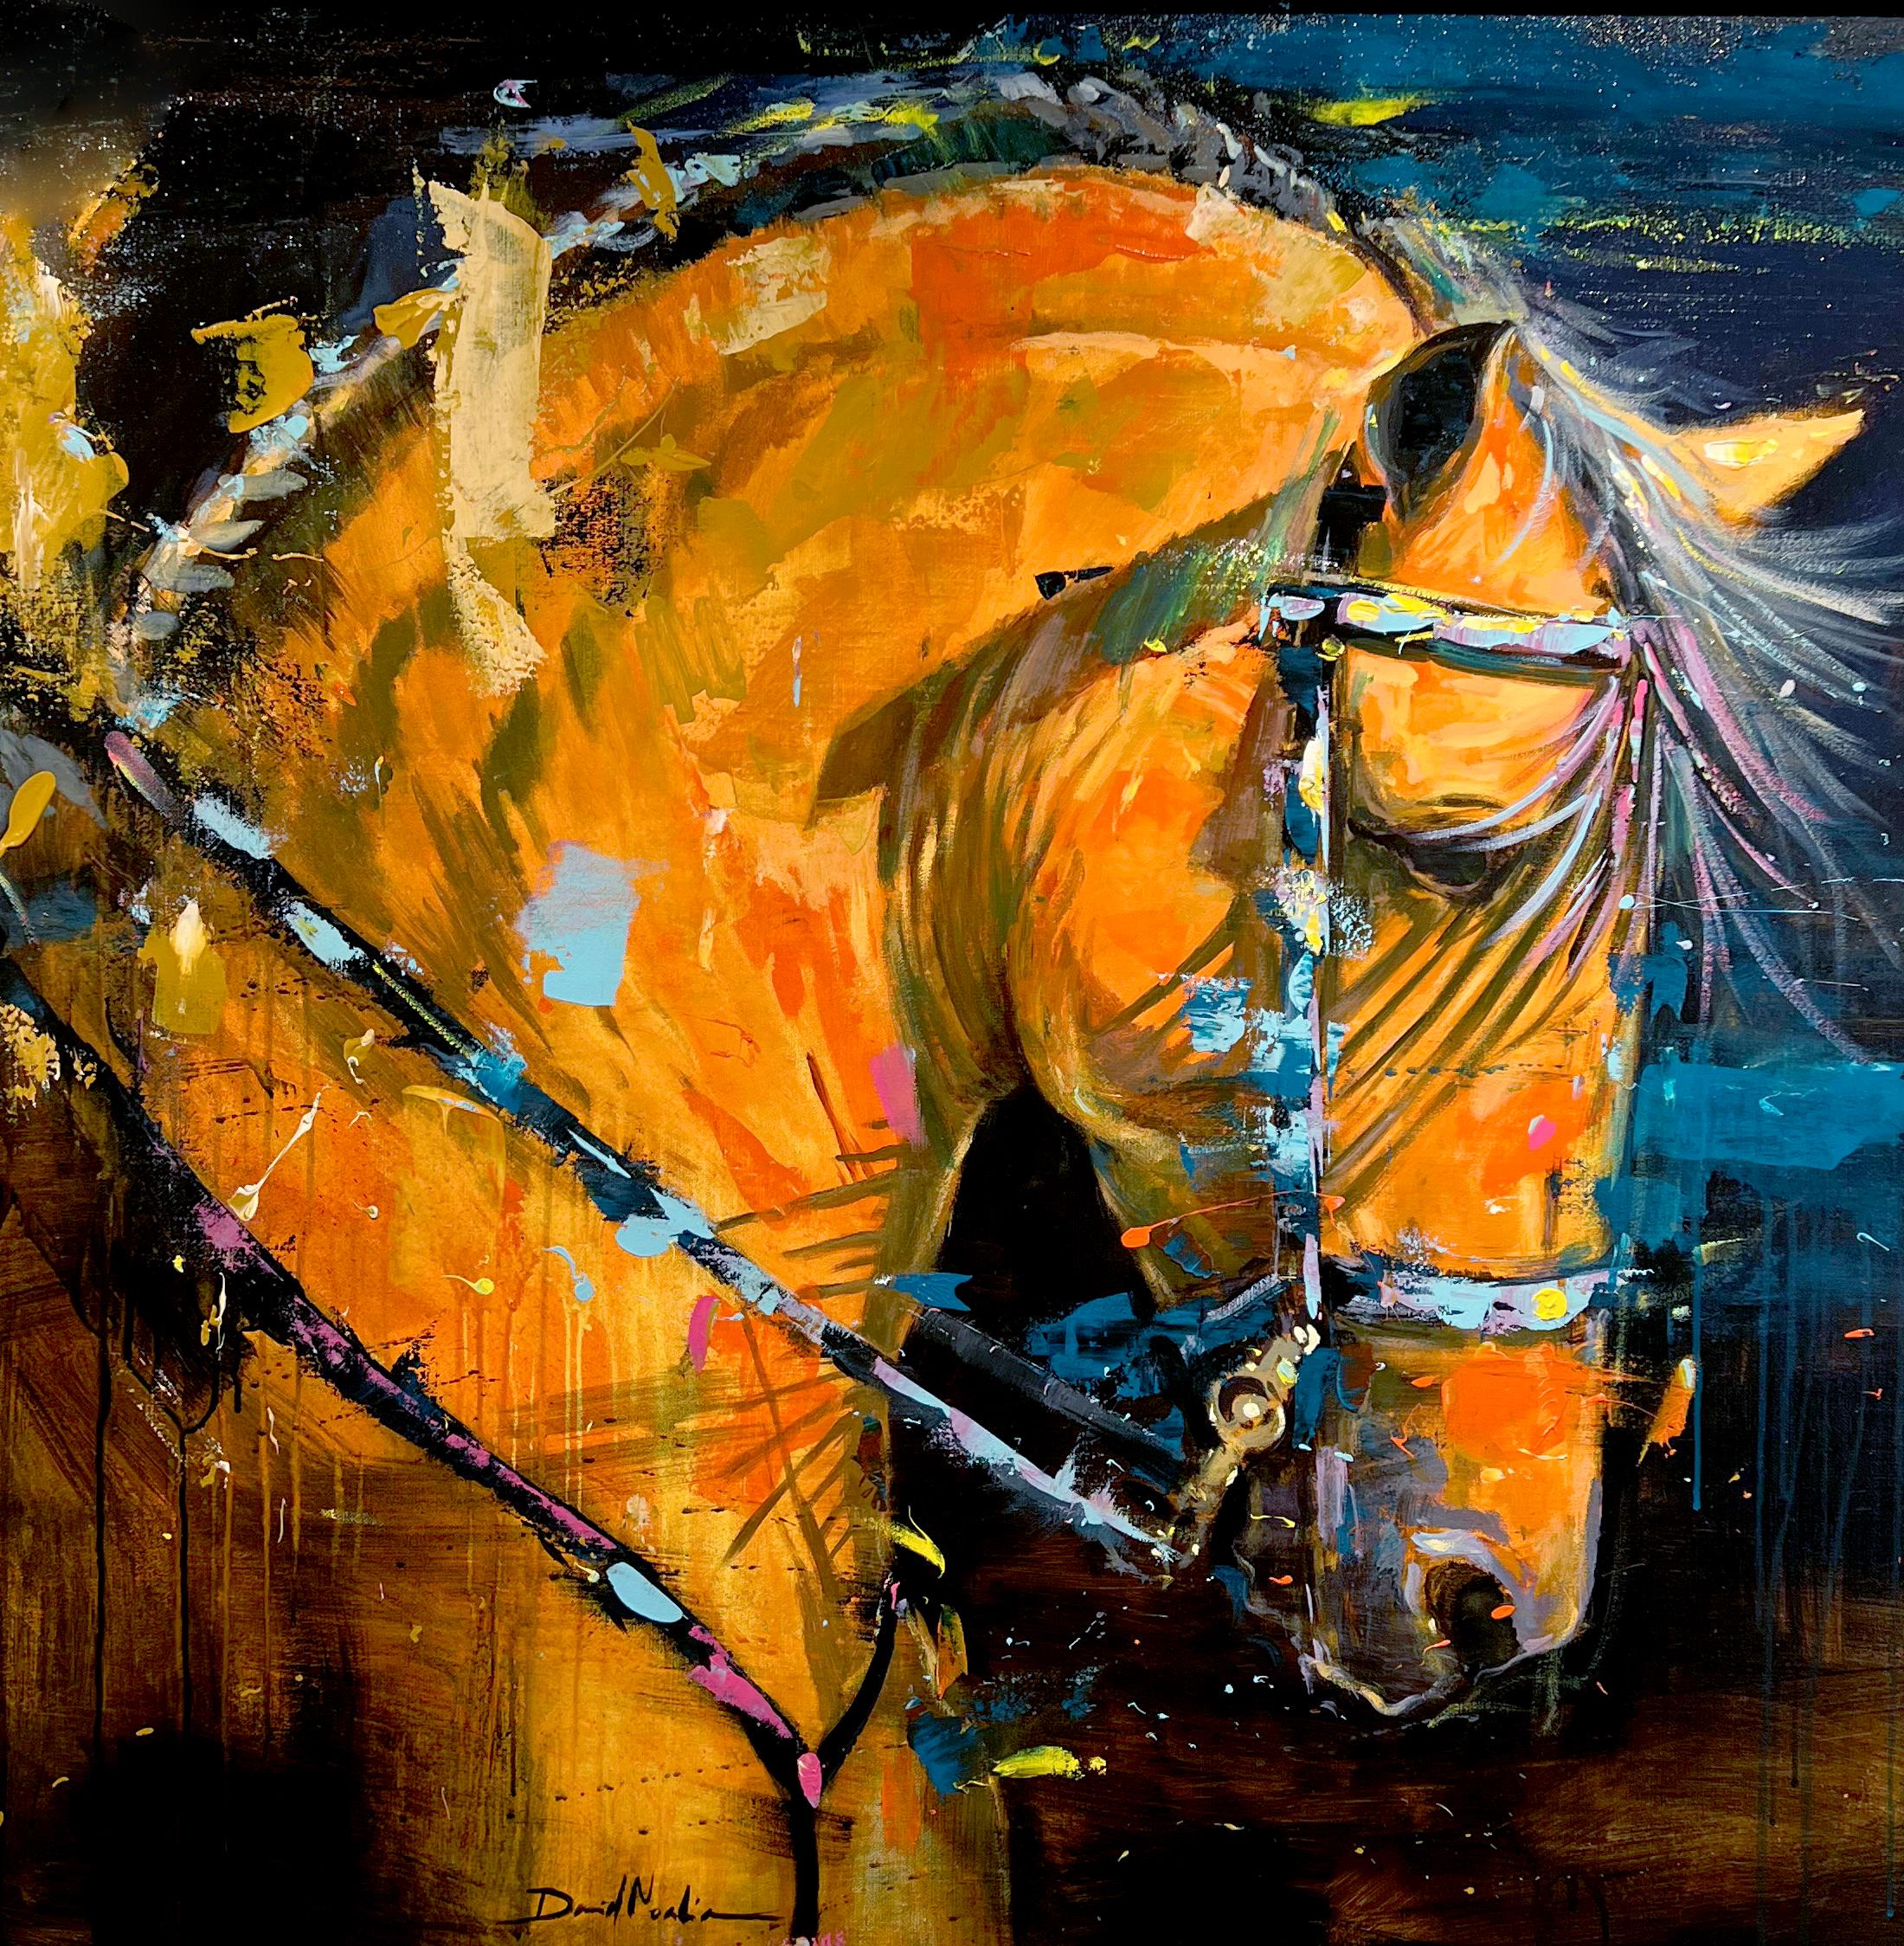 Cette œuvre colorée, "Moreno", est une peinture à l'huile équine sur toile de 40x40 représentant un cheval marron clair sur un fond sombre, habillé pour le spectacle. Des roses, des violets et des bleus vifs dansent autour de l'animal, capturant